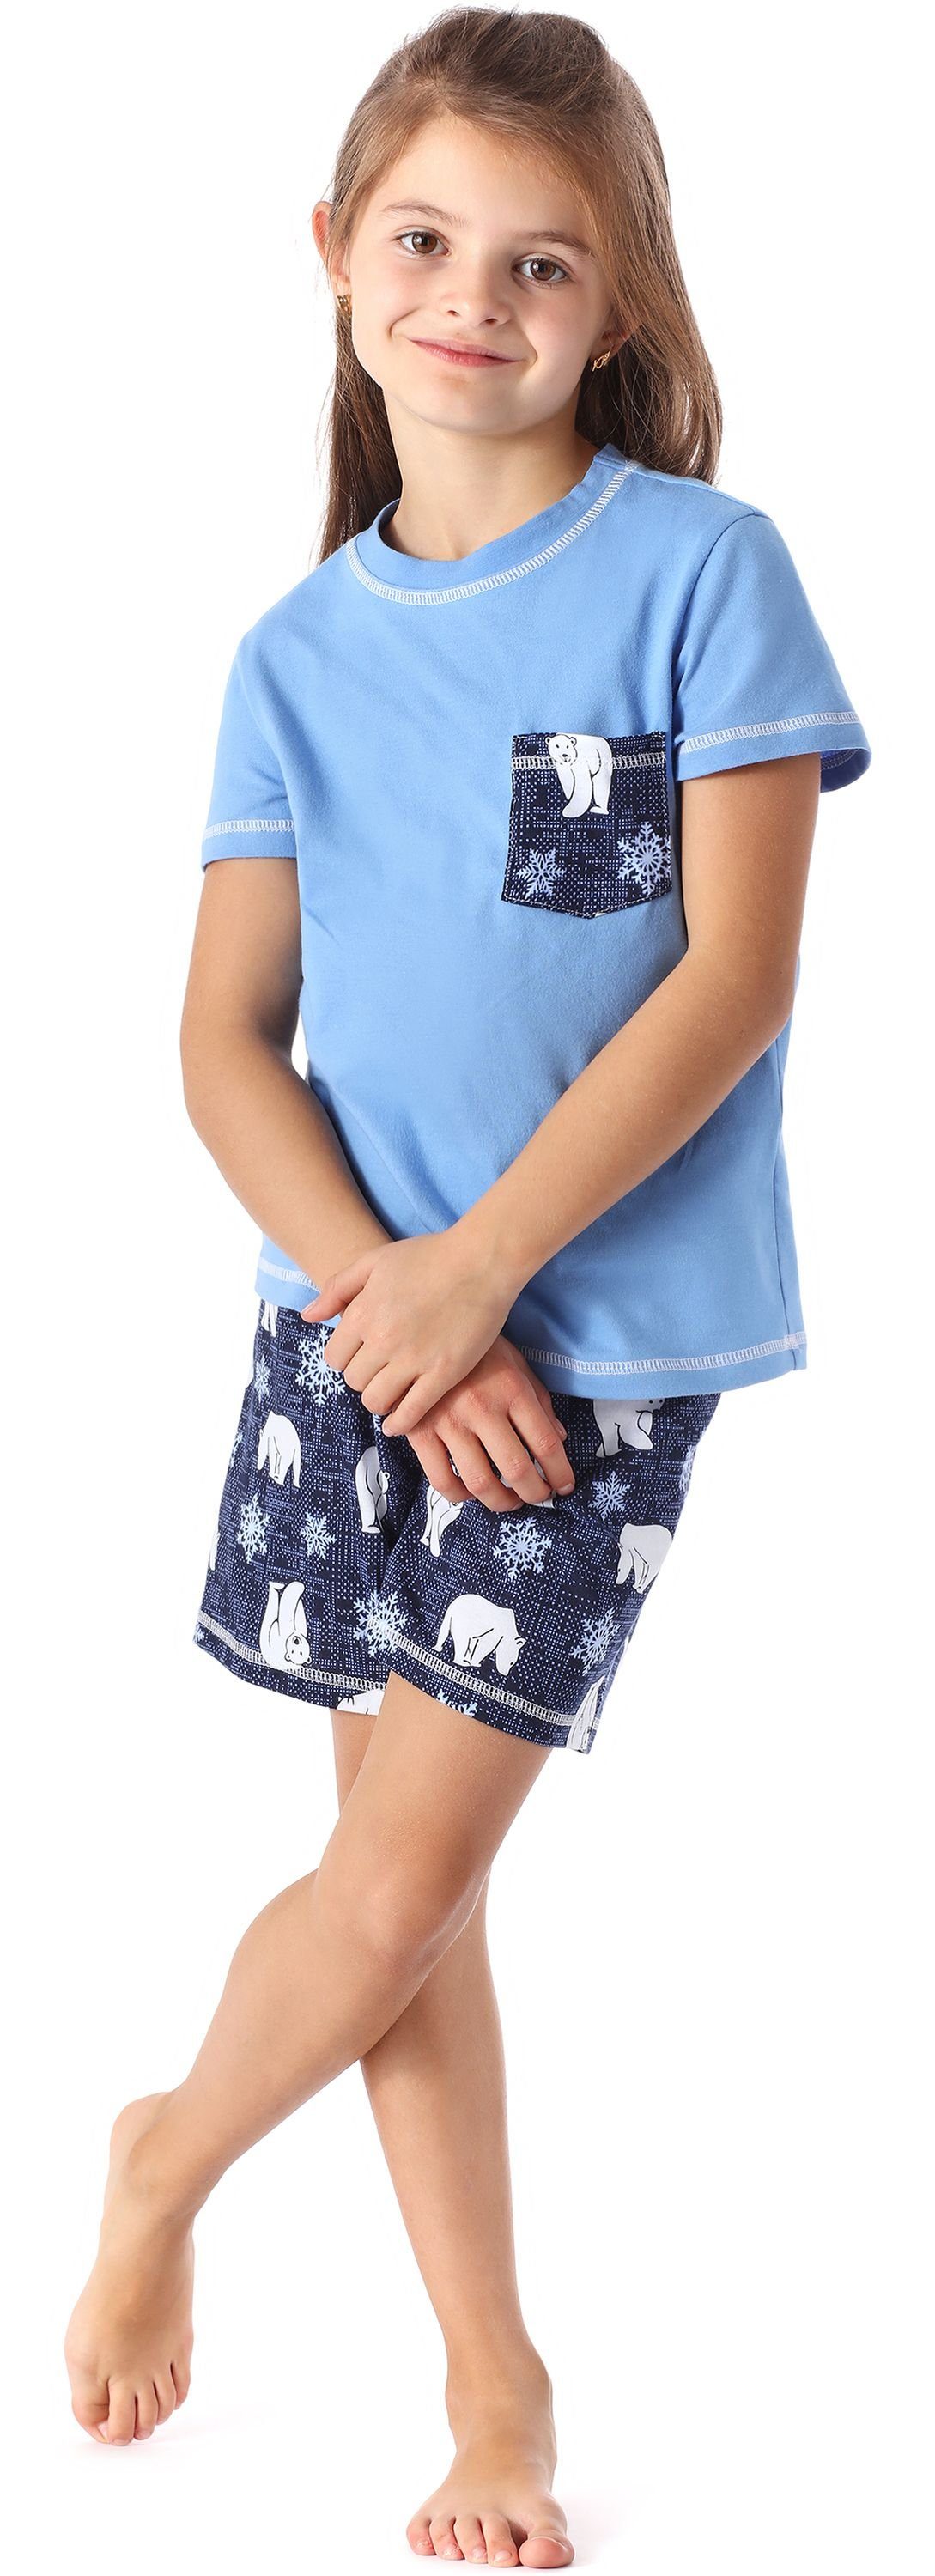 MS10-292 Merry Kurz aus Schlafanzüge Schlafanzug Baumwolle Mädchen Style Pyjama Blau/Bär Set